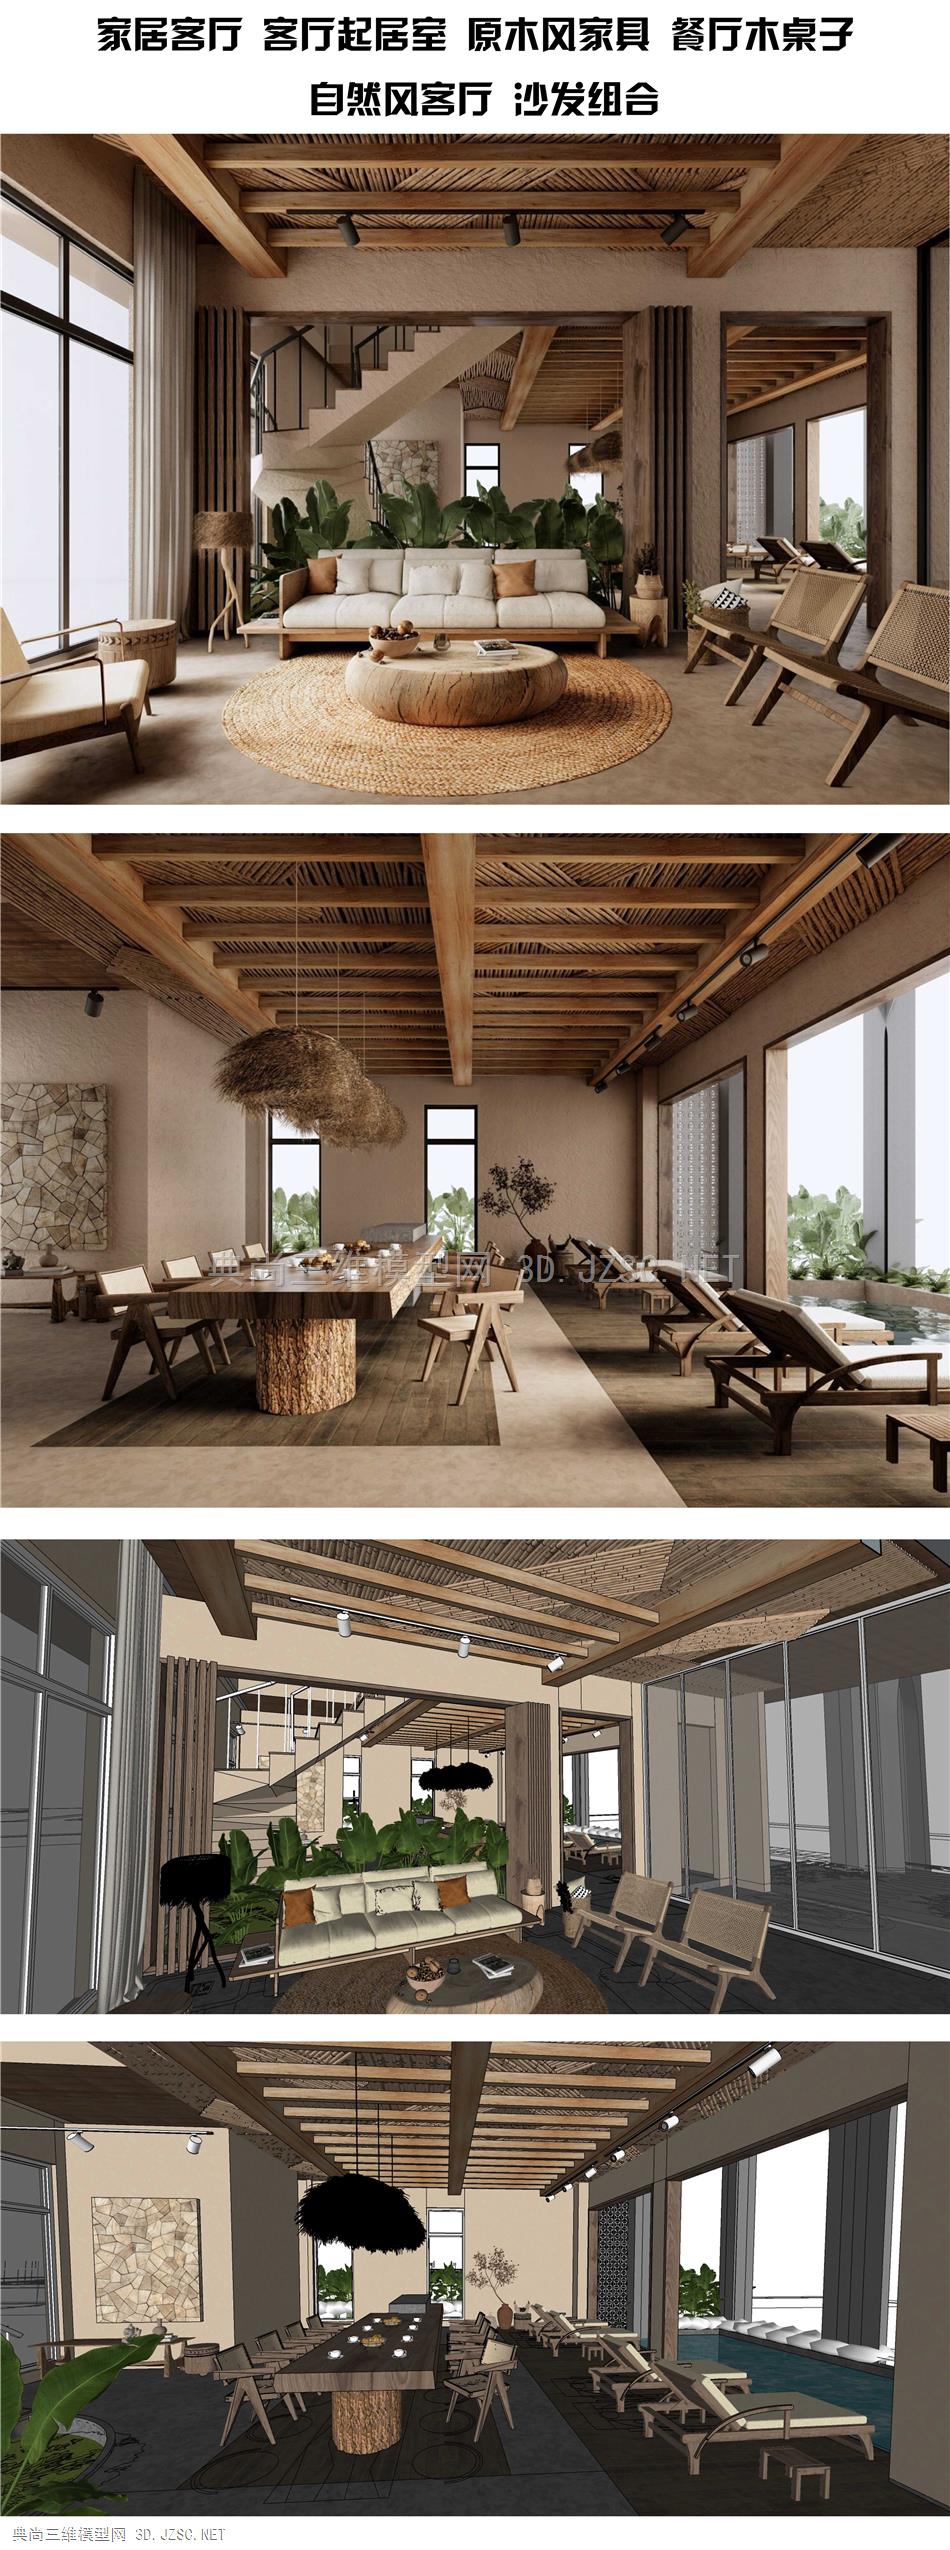 室家居客厅 客厅起居室 原木风家具 餐厅木桌子 自然风客厅 沙发组合